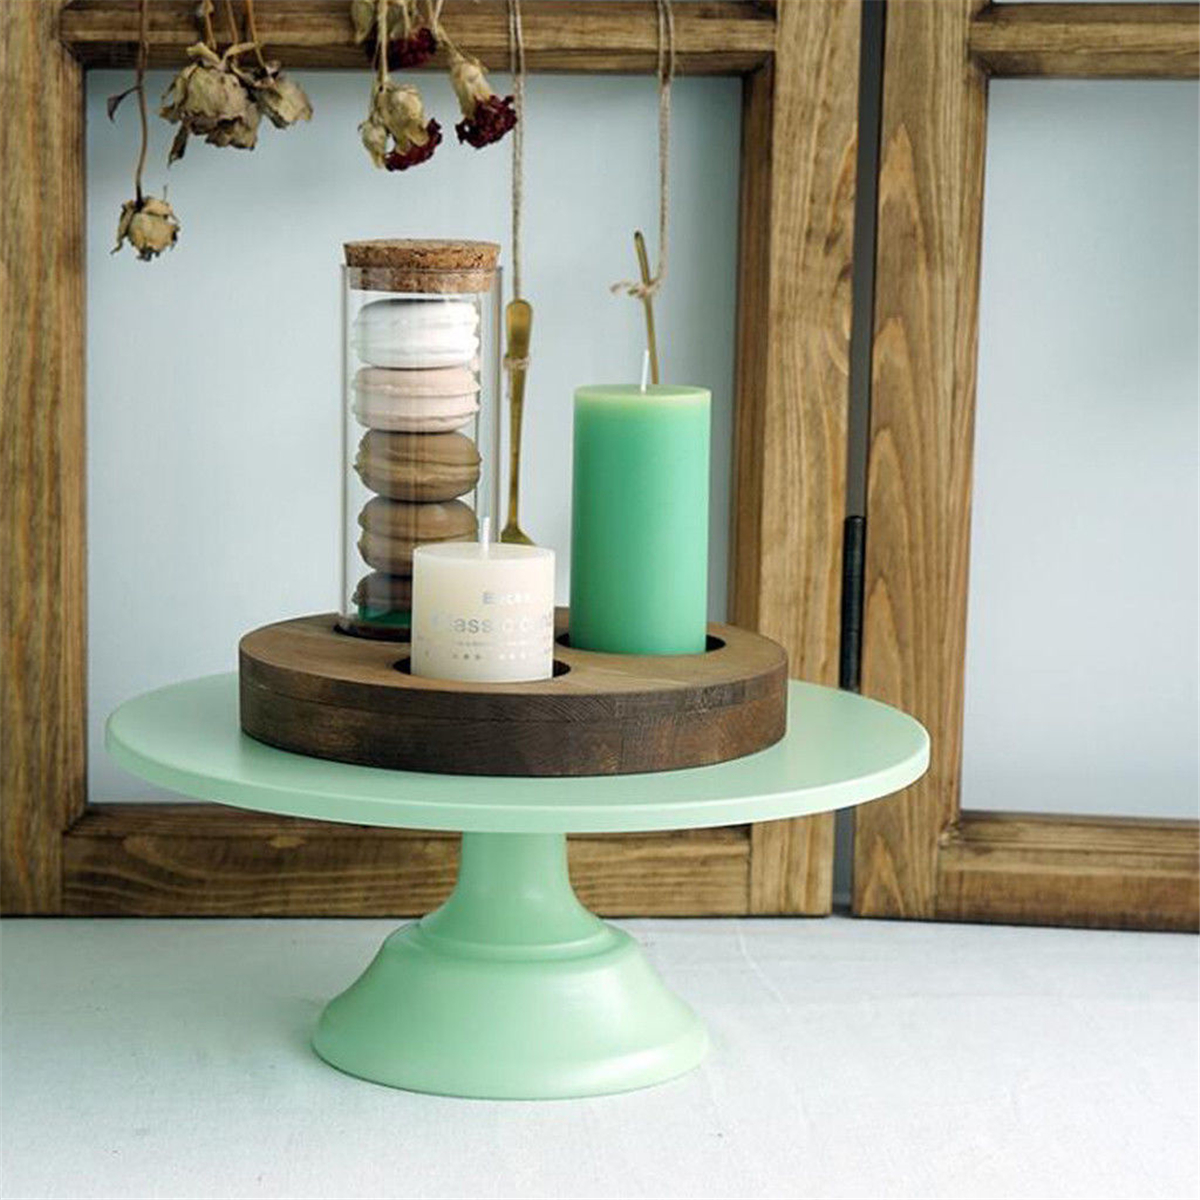 1012-Inch-Iron-Green-Round-Cake-Stand-Pedestal-Dessert-Holder-Wedding-Party-Decorations-1476996-2